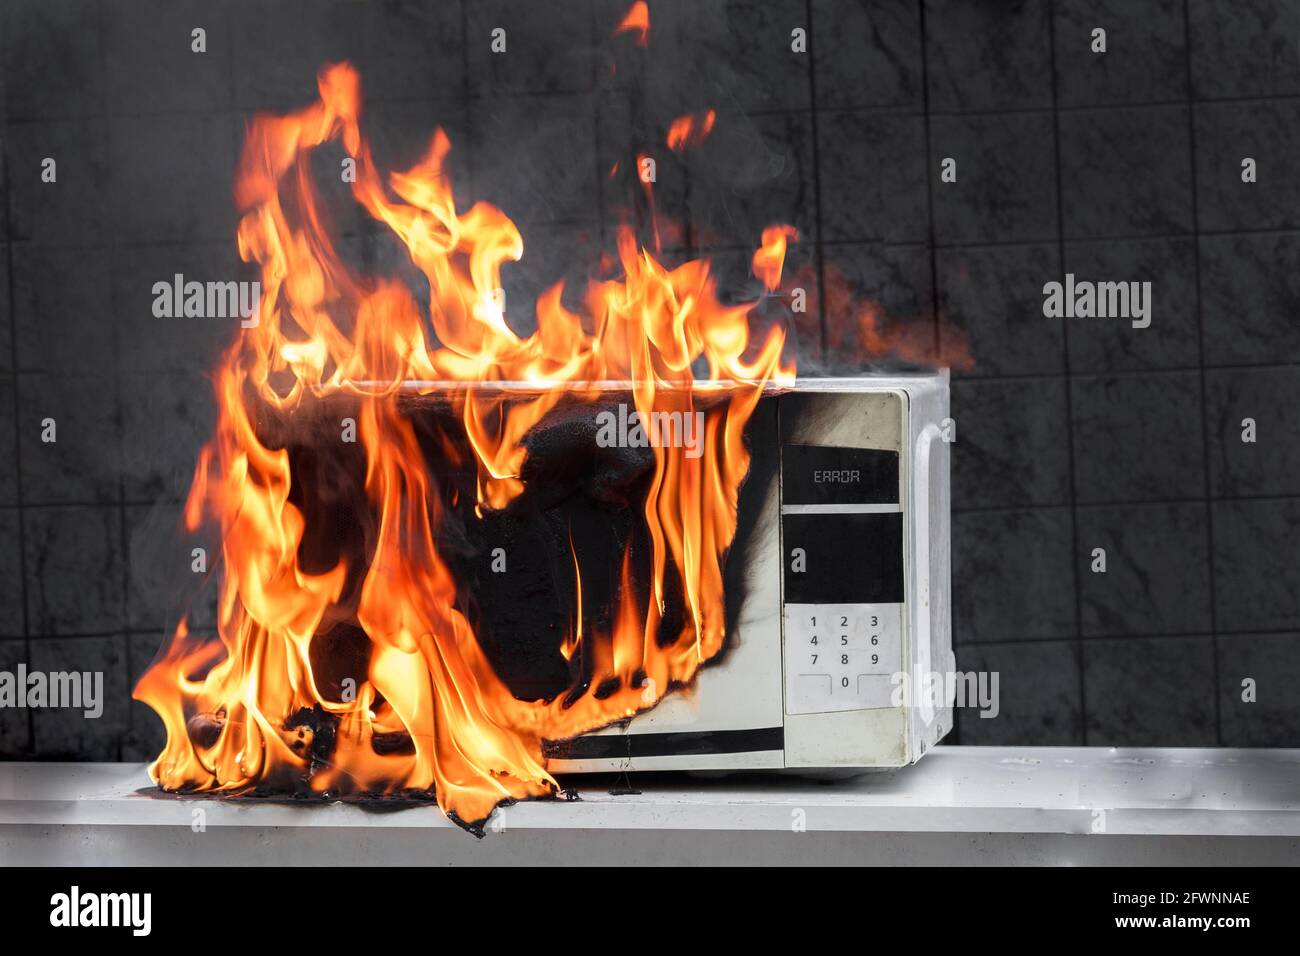 Mikrowellenofen brennt, Hausbrand aufgrund von unsachgemäßem Betrieb, spontane Verbrennung fehlerhafter Geräte Stockfoto